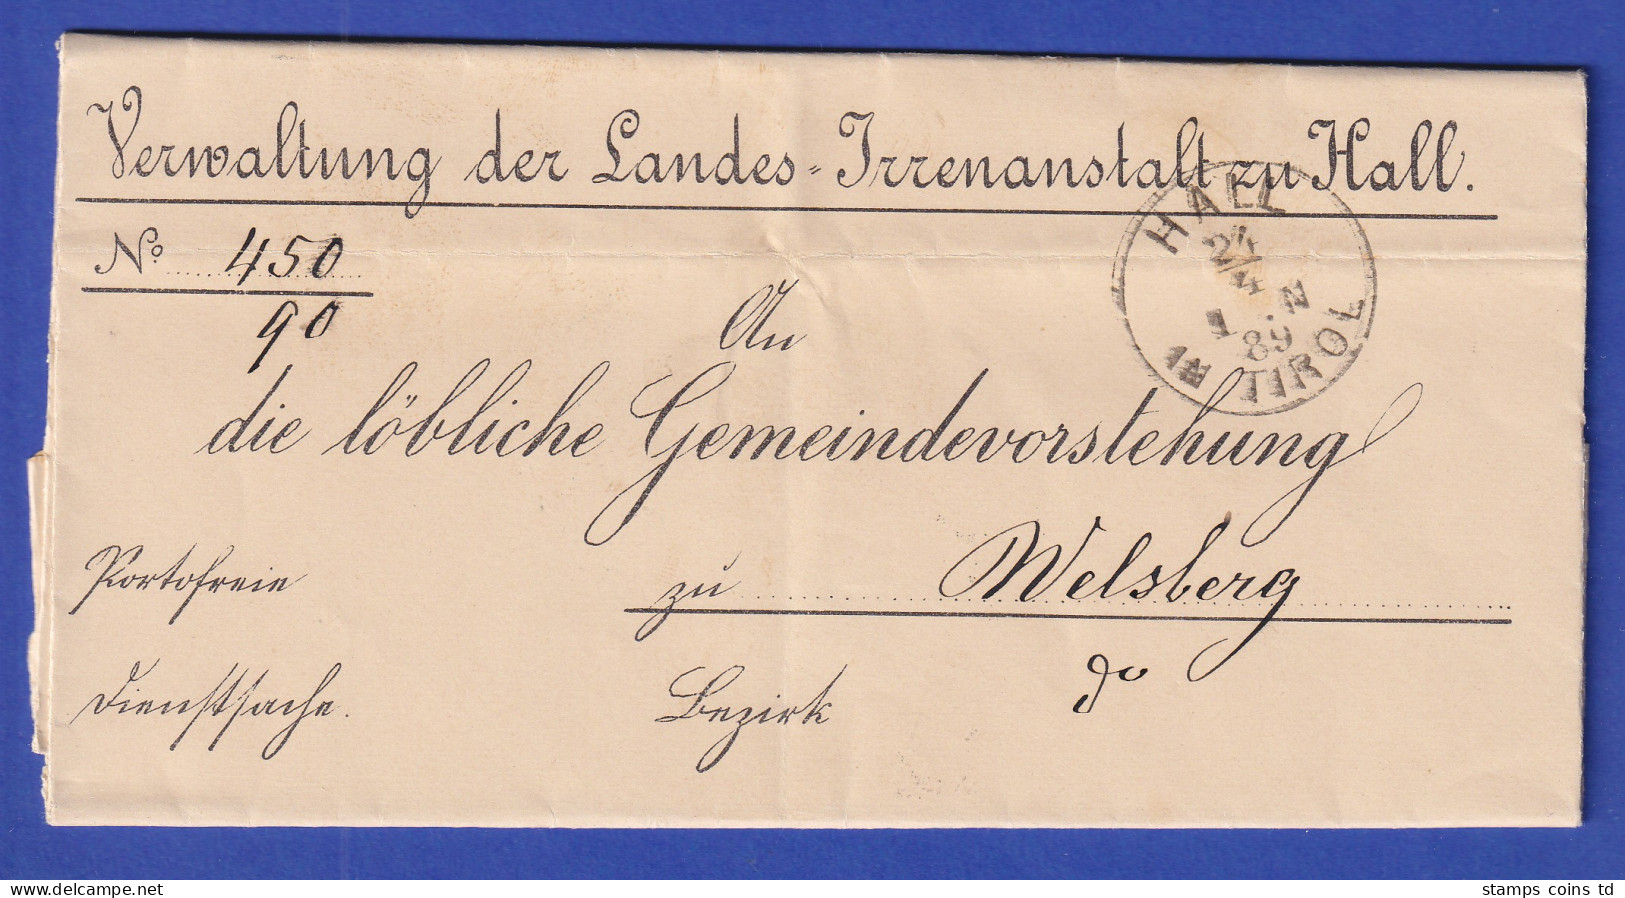 Österreich Dienstbrief Mit Rundstempel HALL IN TIROL 1889 - ...-1850 Préphilatélie